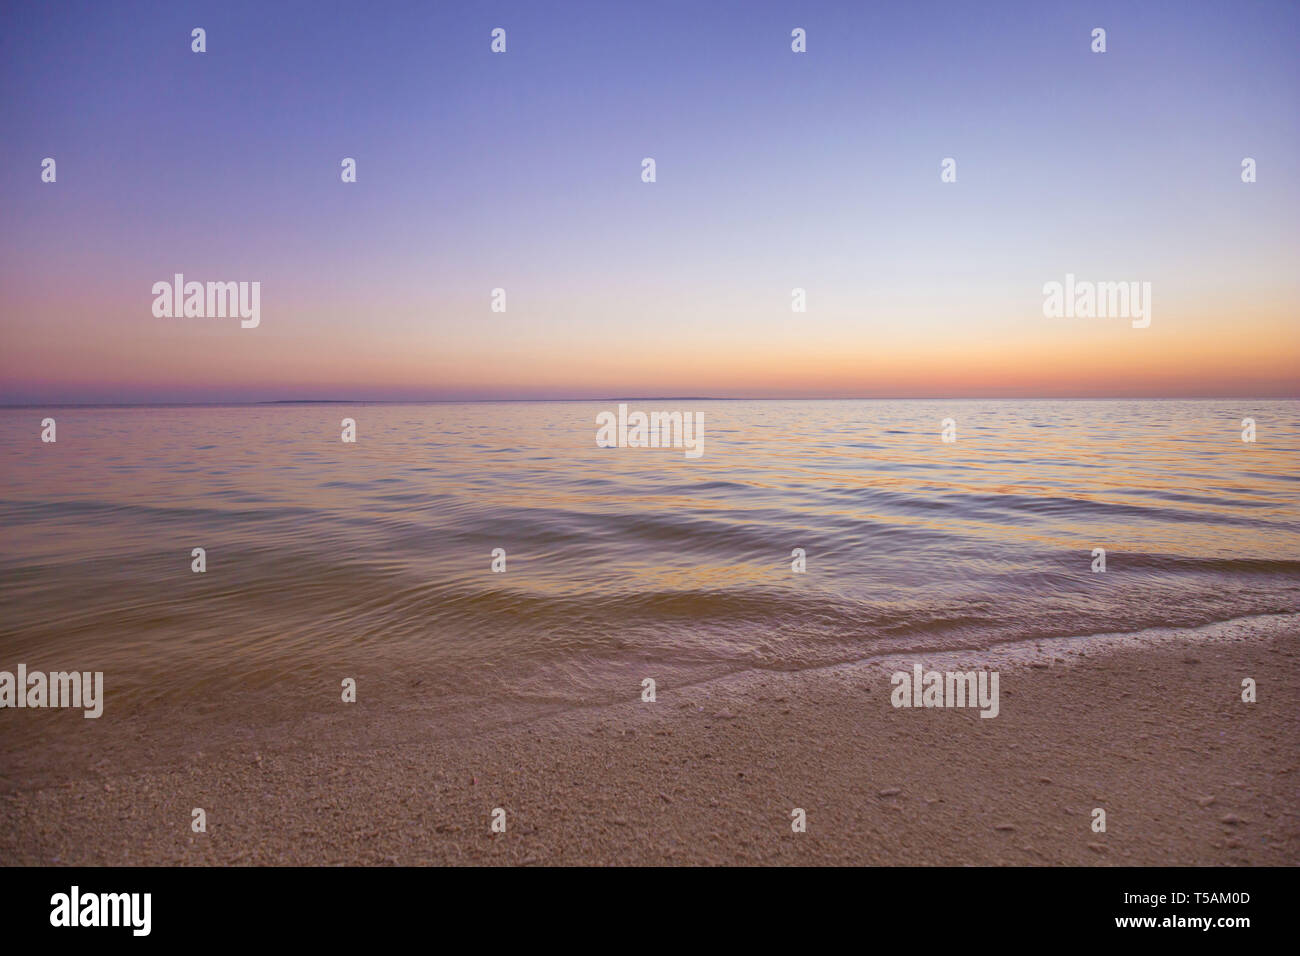 Mer calme plage de sable blanc de l'eau, dans un quartier tranquille d'été coloré crépuscule coucher de fond photo Banque D'Images